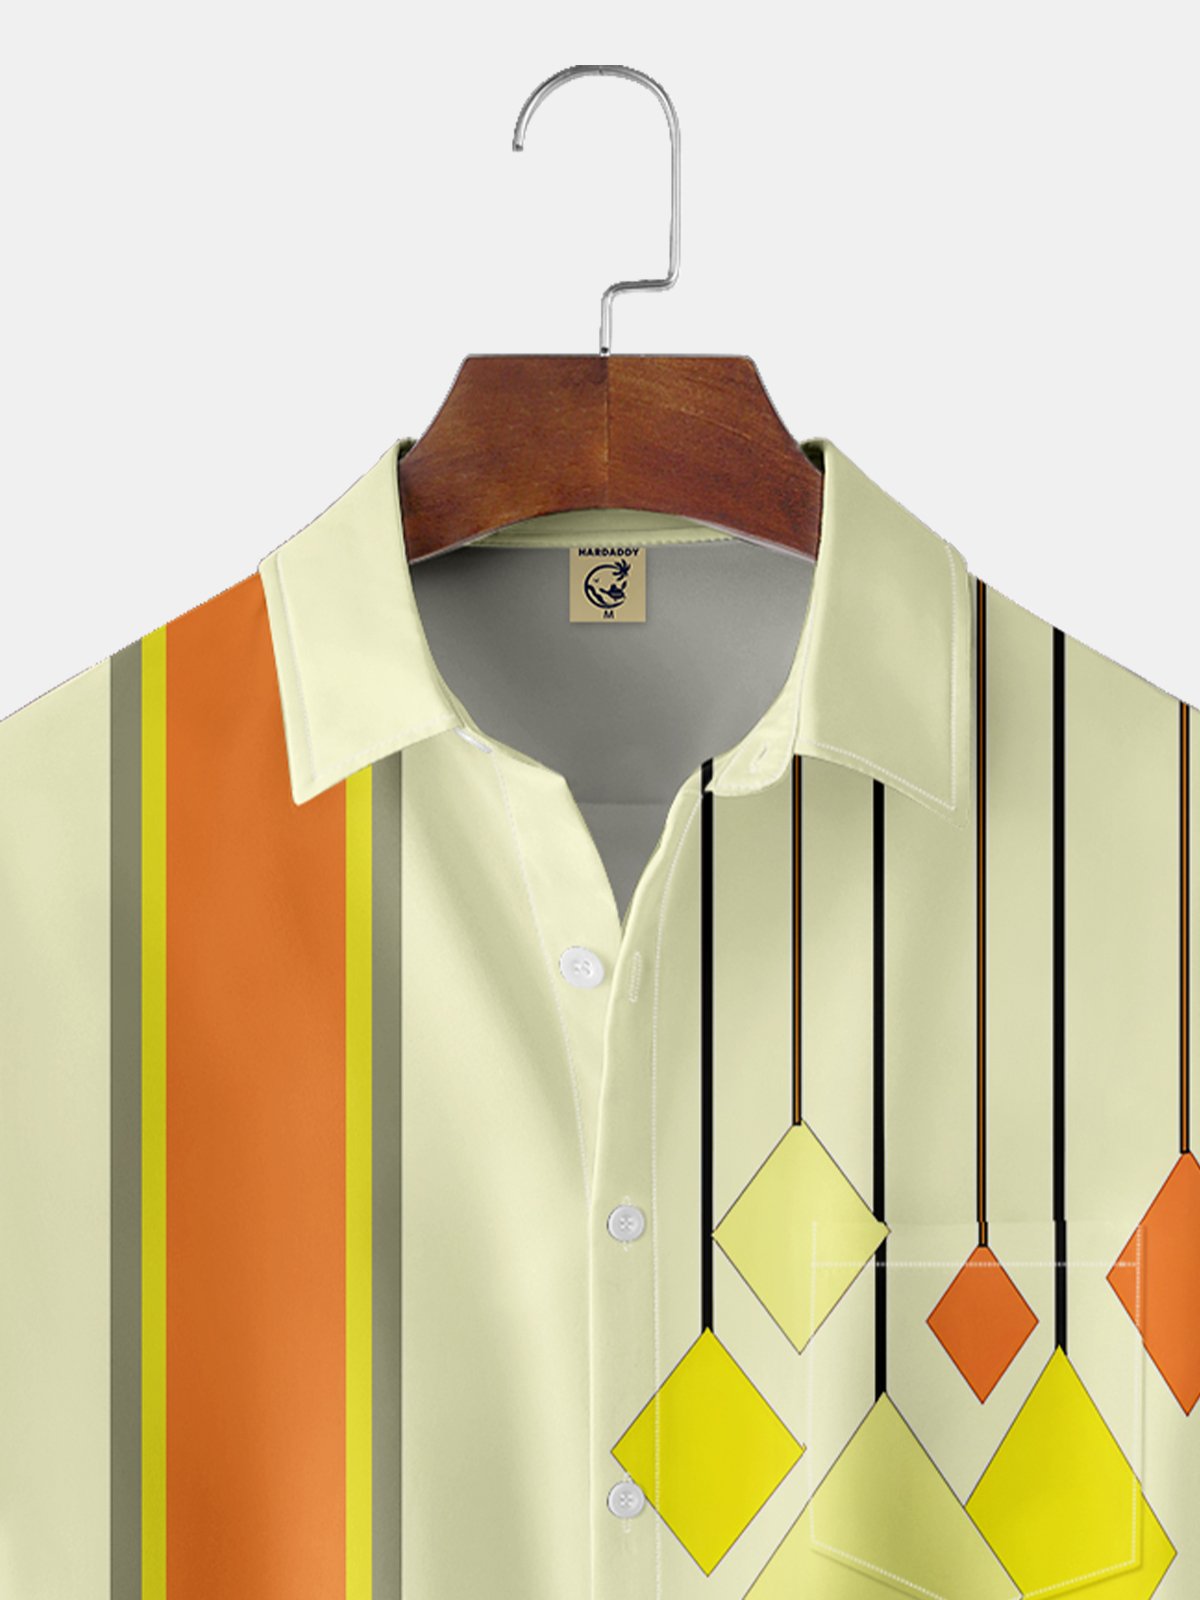 Moisture-wicking Diamond Pattern Chest Pocket Bowling Shirt